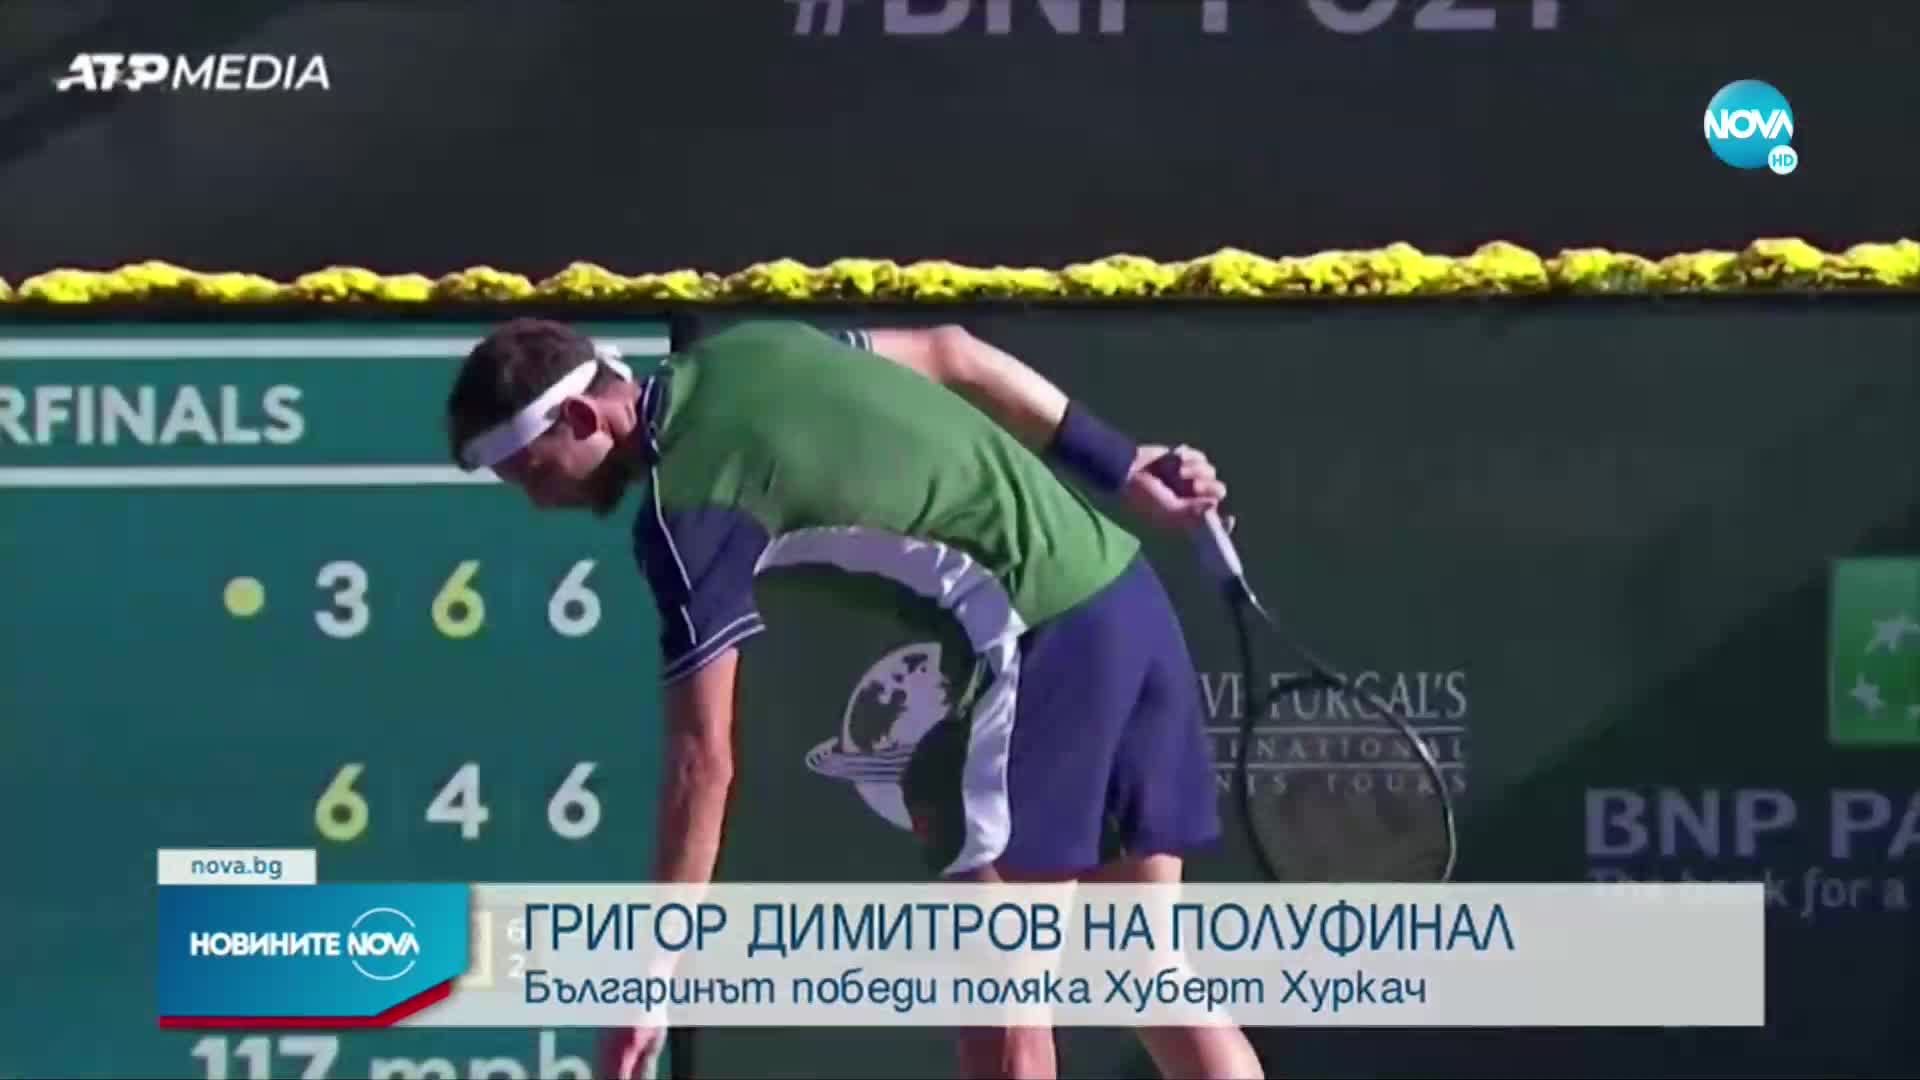 Григор Димитров е на полуфинал в Индиън Уелс след нов обрат (ВИДЕО+СНИМКИ)